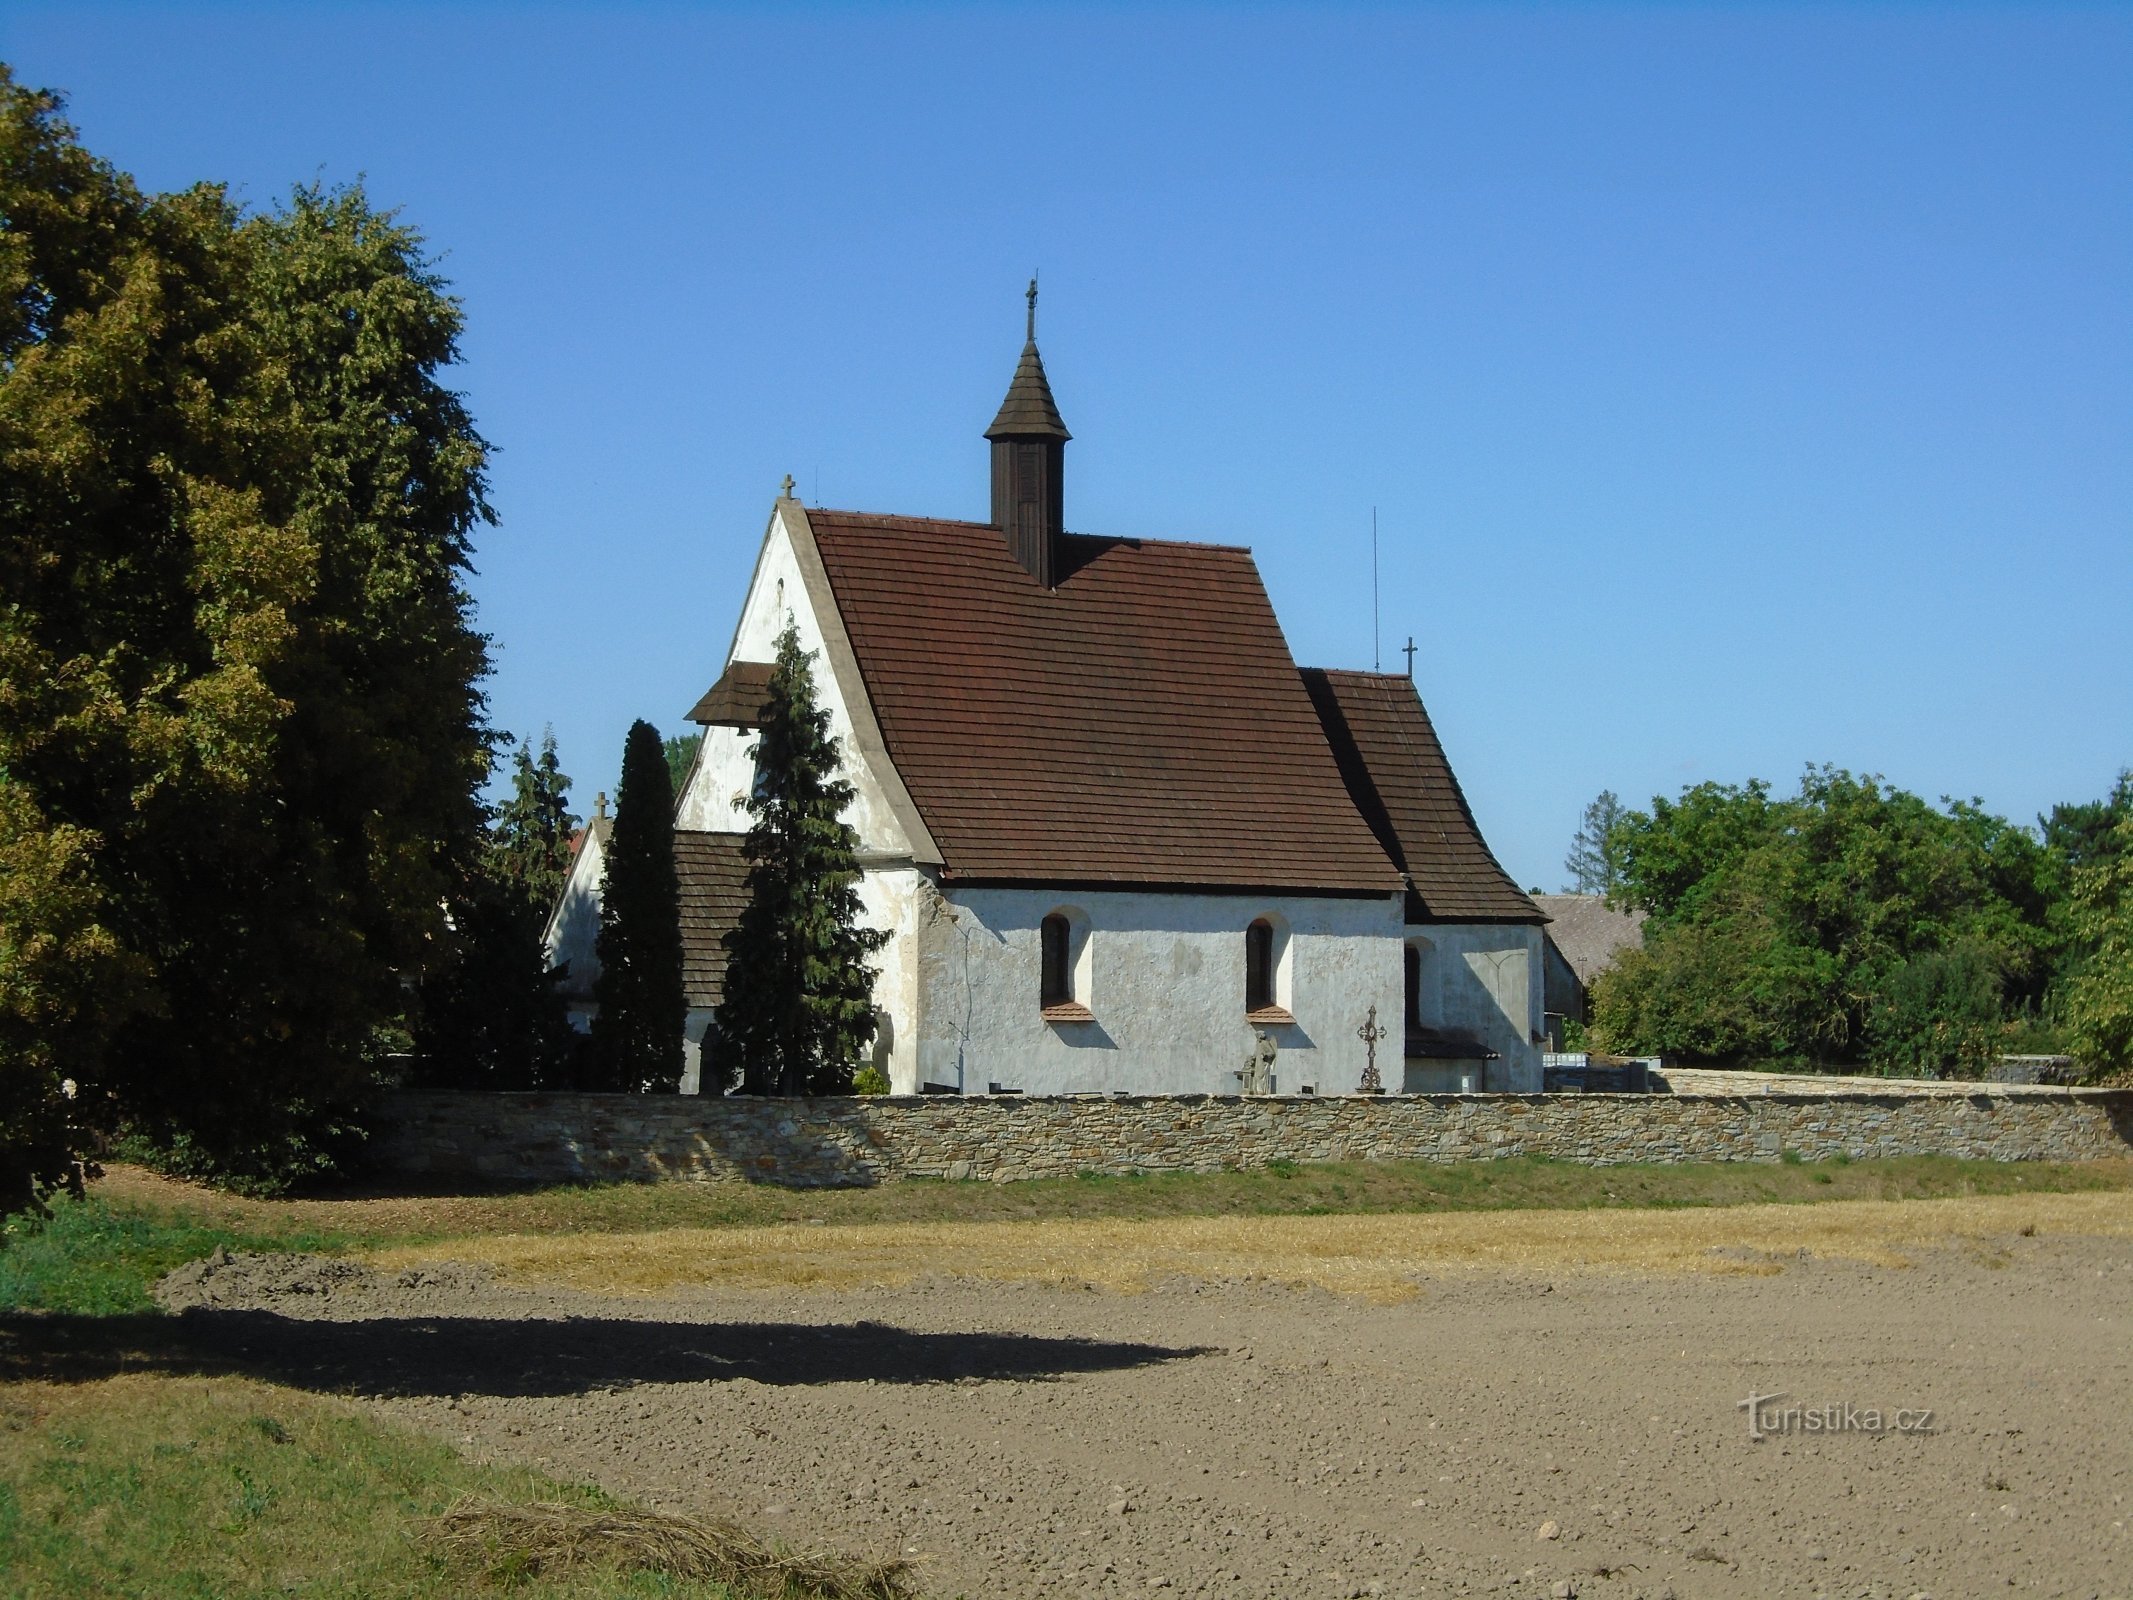 圣教堂玛丽·马格达莱娜 (Ledce)